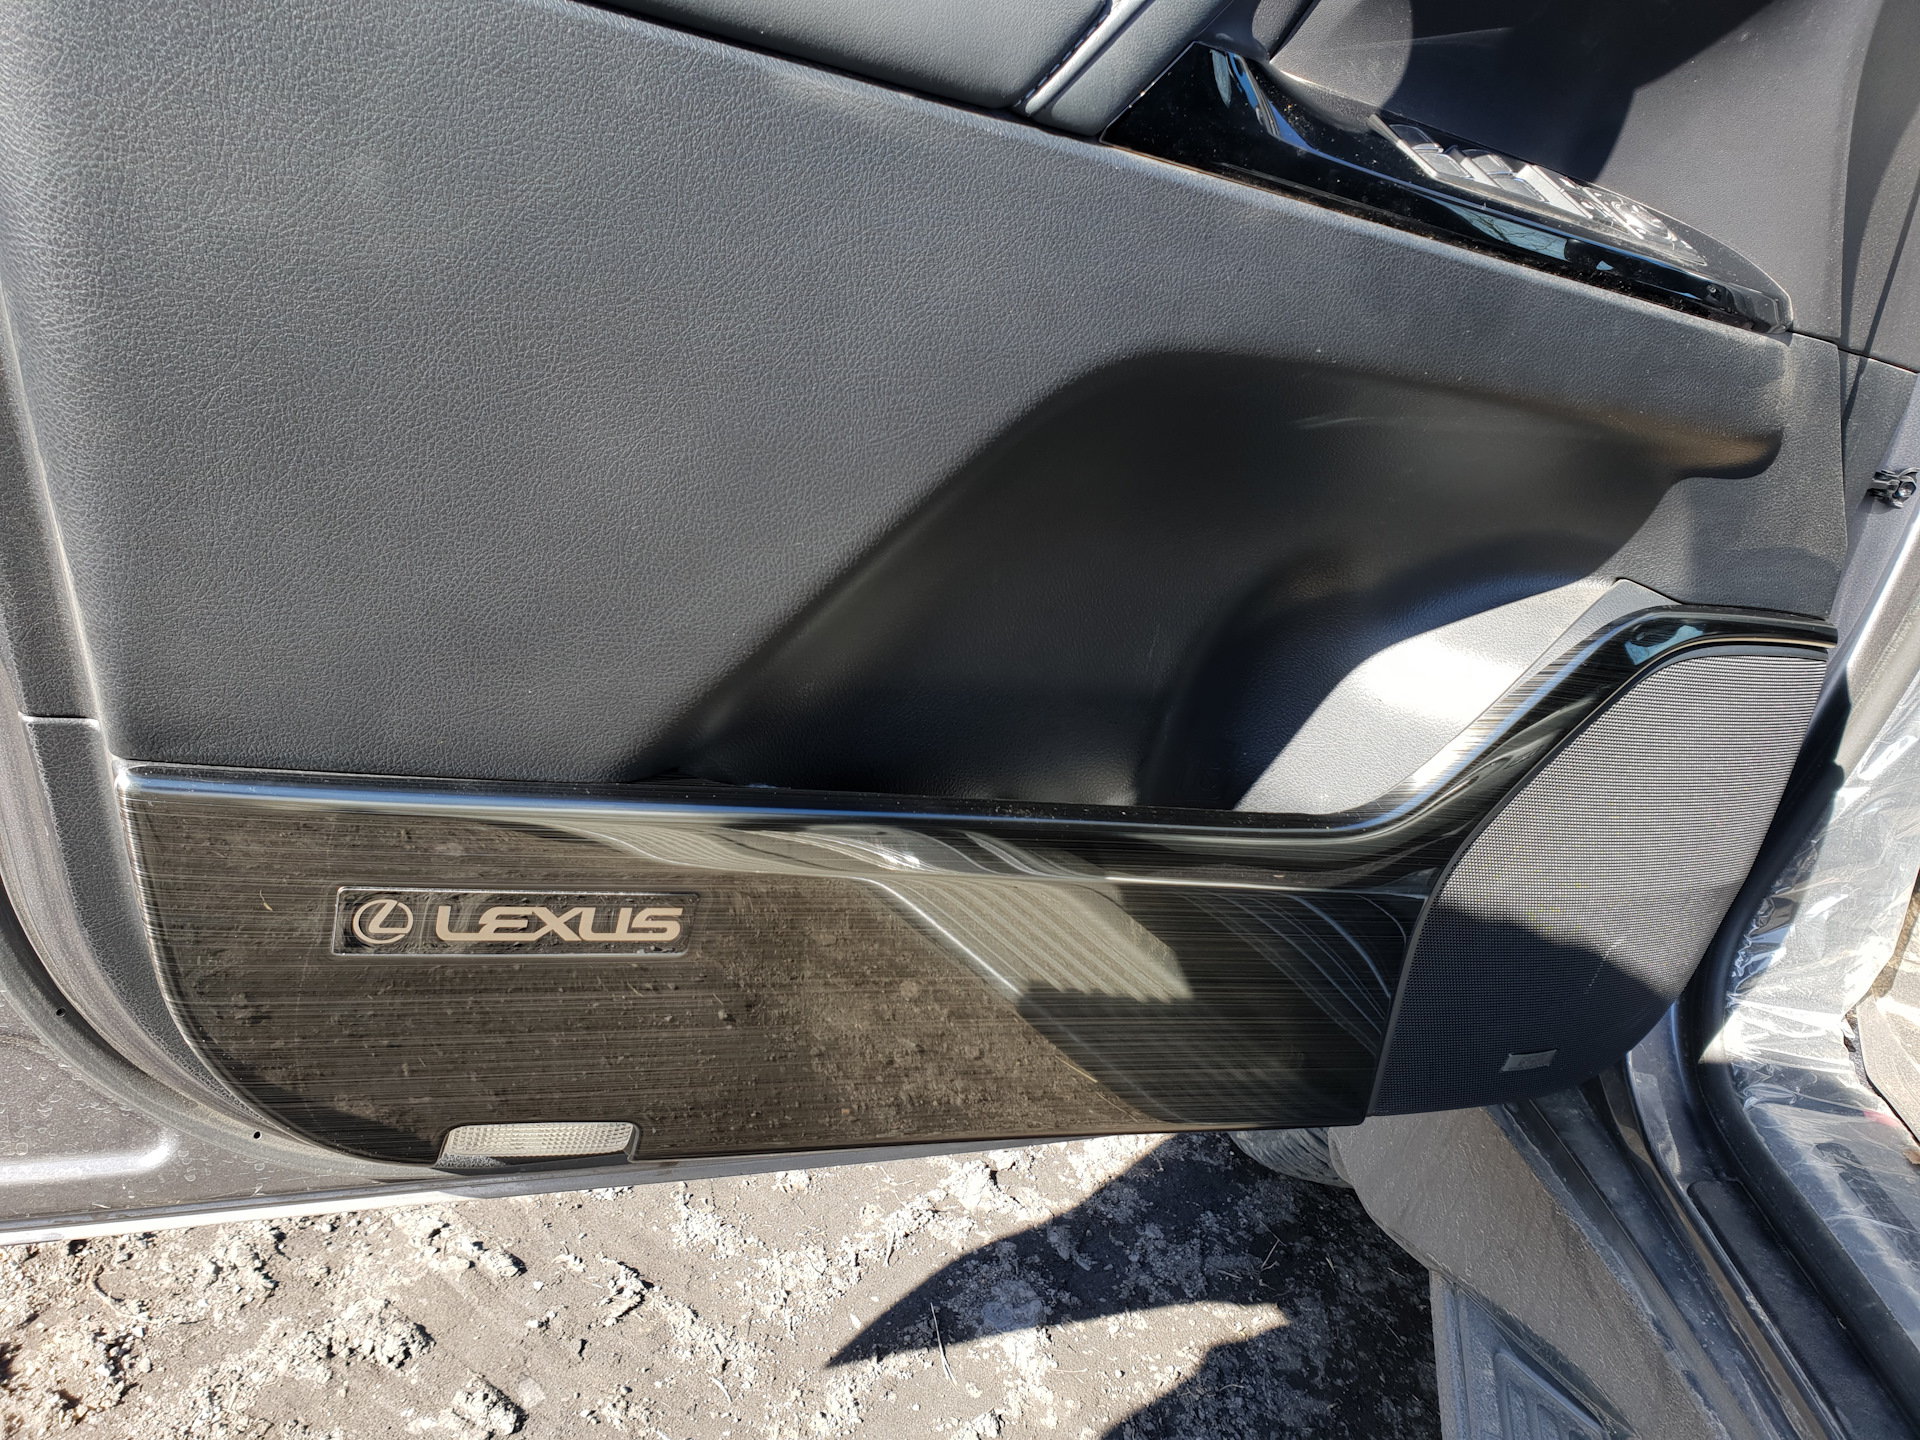 Накладка двери лексус. Дверной карман Lexus lx570. Накладка вставки задней двери Lexus lx570. Накладка уплотнитель задняя левая дверь Lexus LX 570. Накладки на двери Лексус lx570 2018.